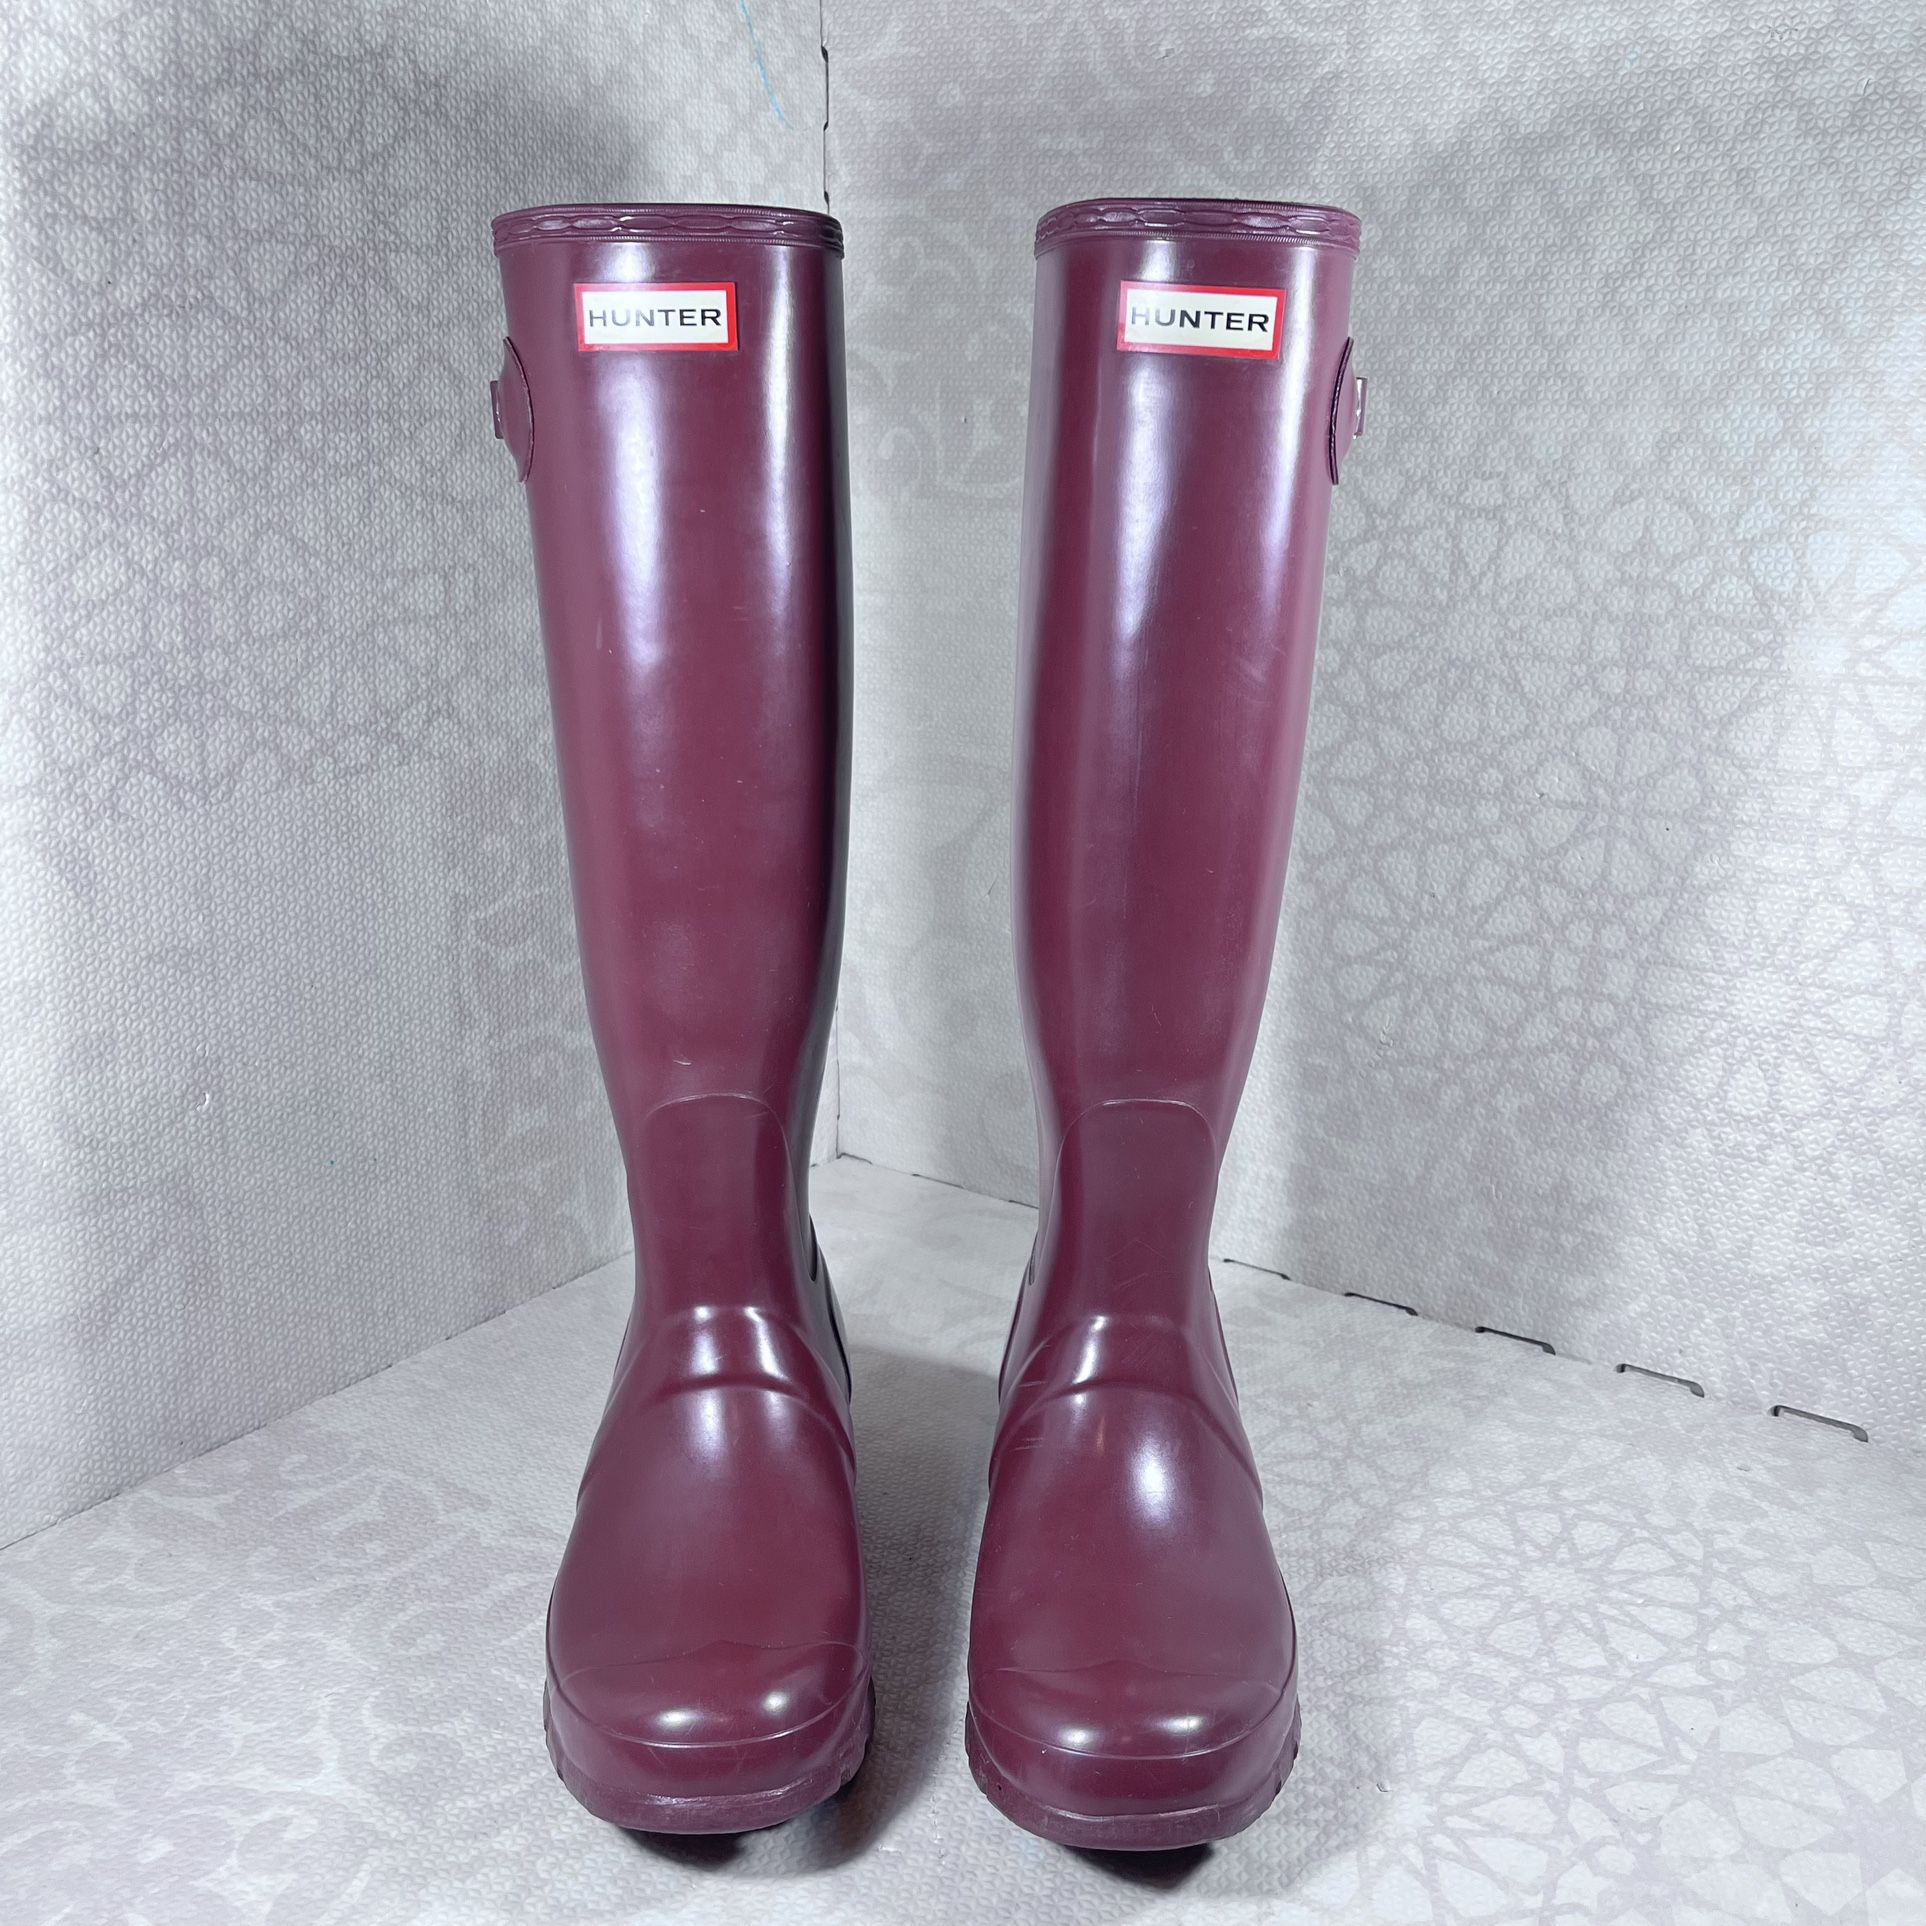 Hunter Women’s Original Tall Gloss Rubber Rain Boots  Galosh Boots Burgundy SZ 8